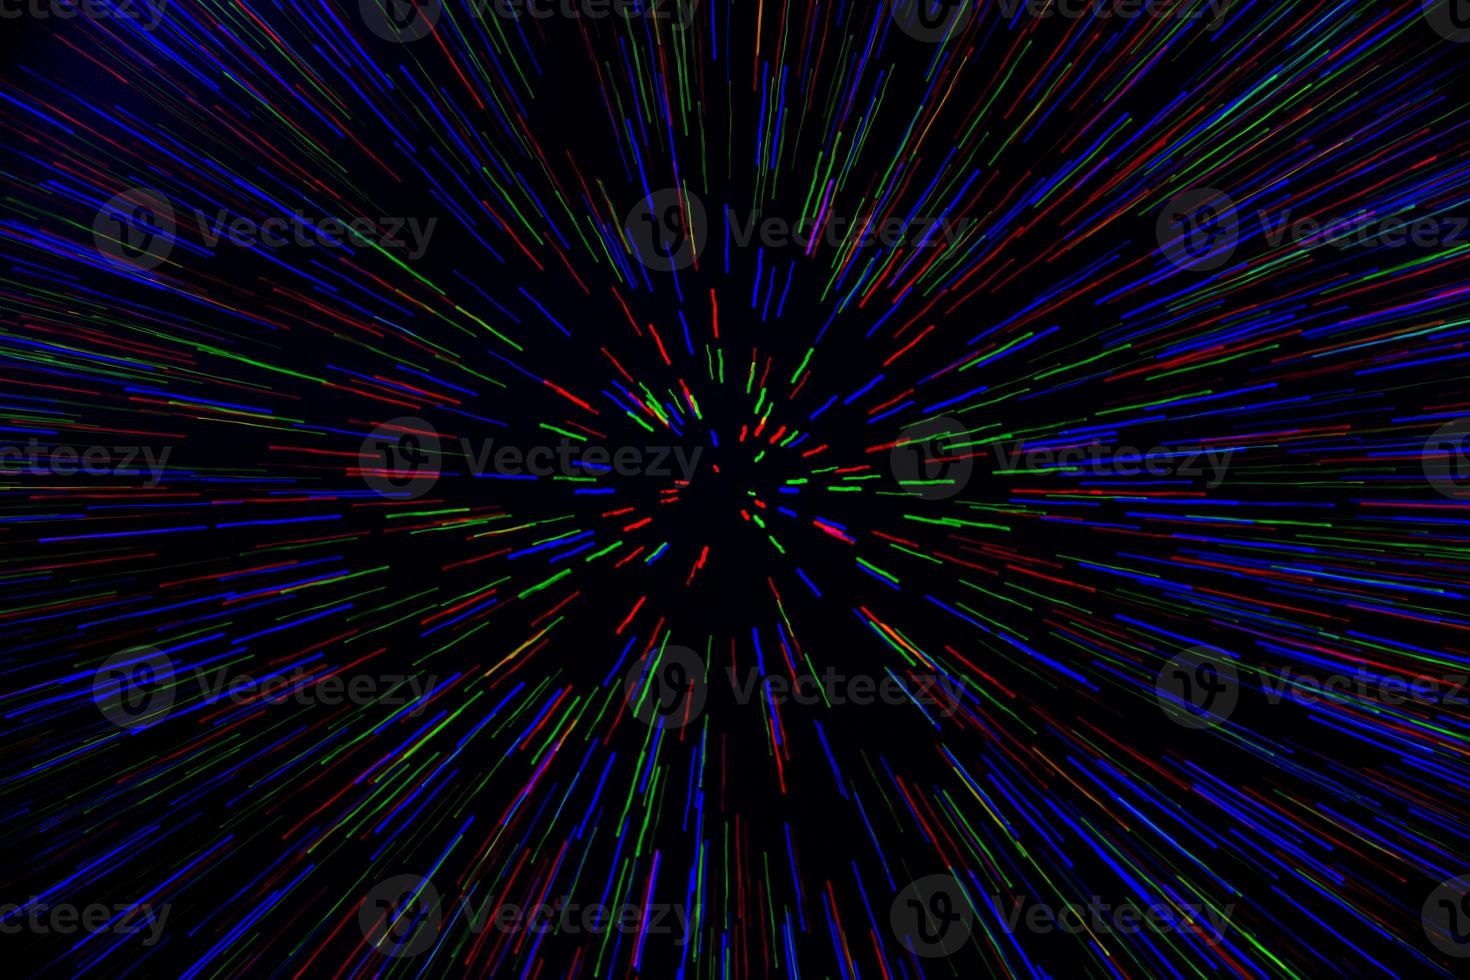 raio de explosão de zoom de lente natural turva pontos azuis verdes vermelhos em fundo preto foto